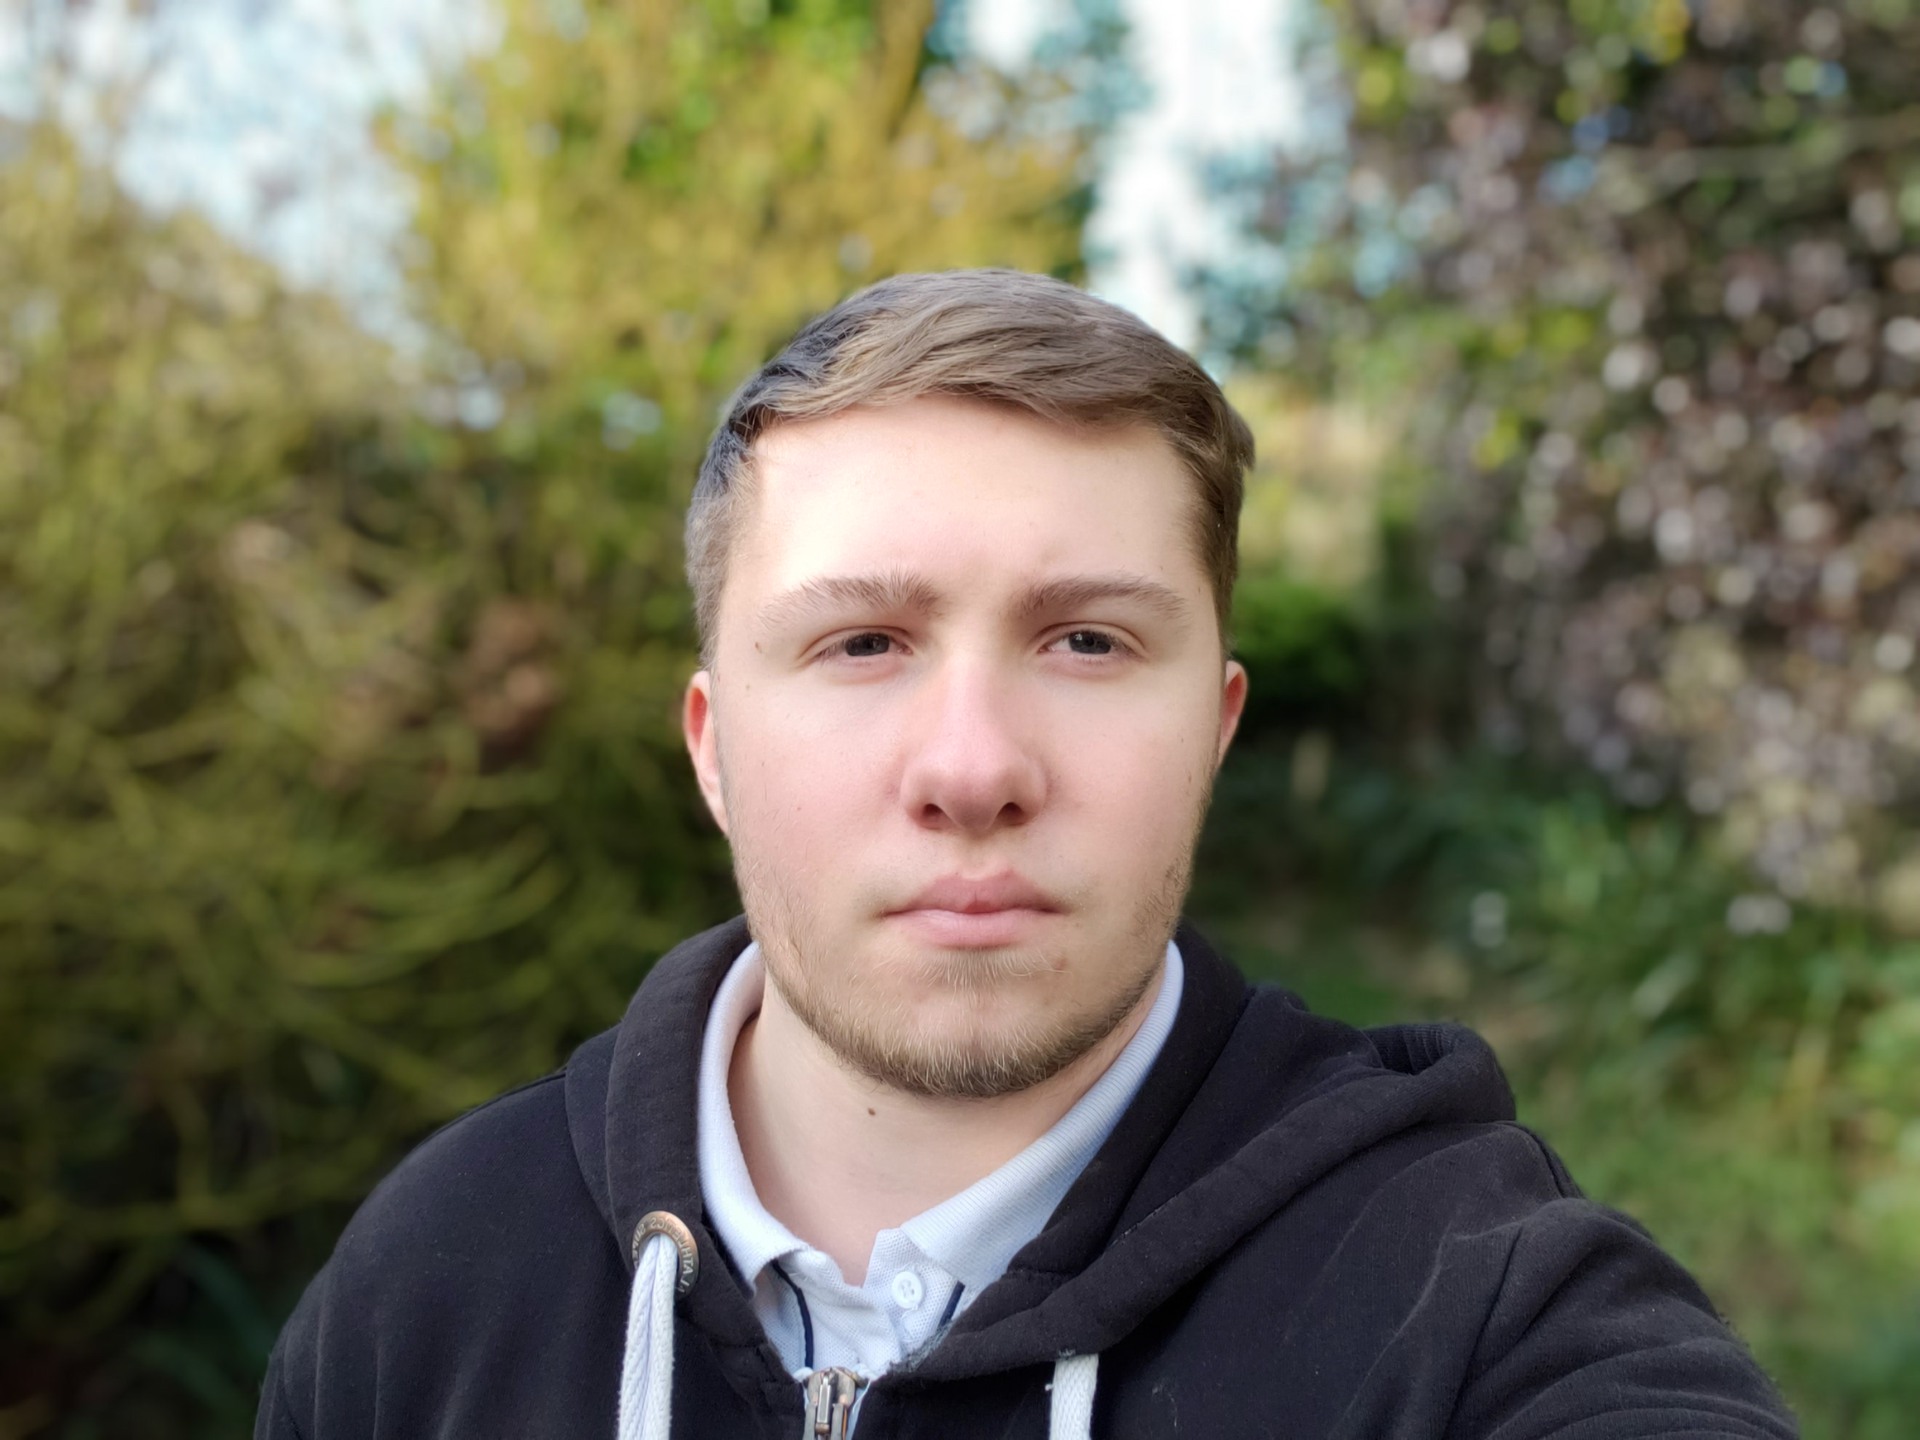 S9 Plus Photo Test Portrait mode selfie test